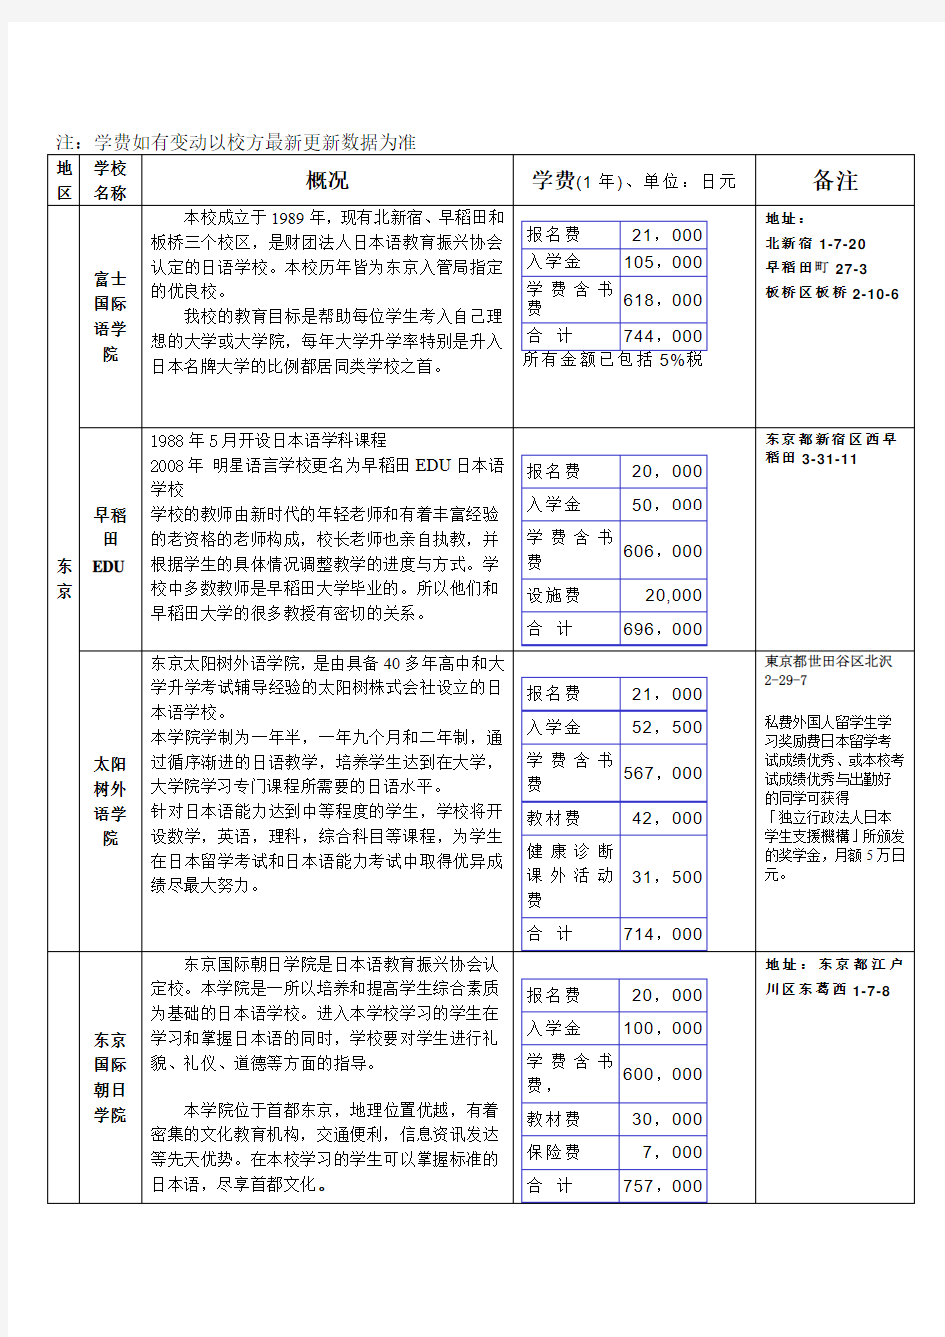 日本语言学校一览表